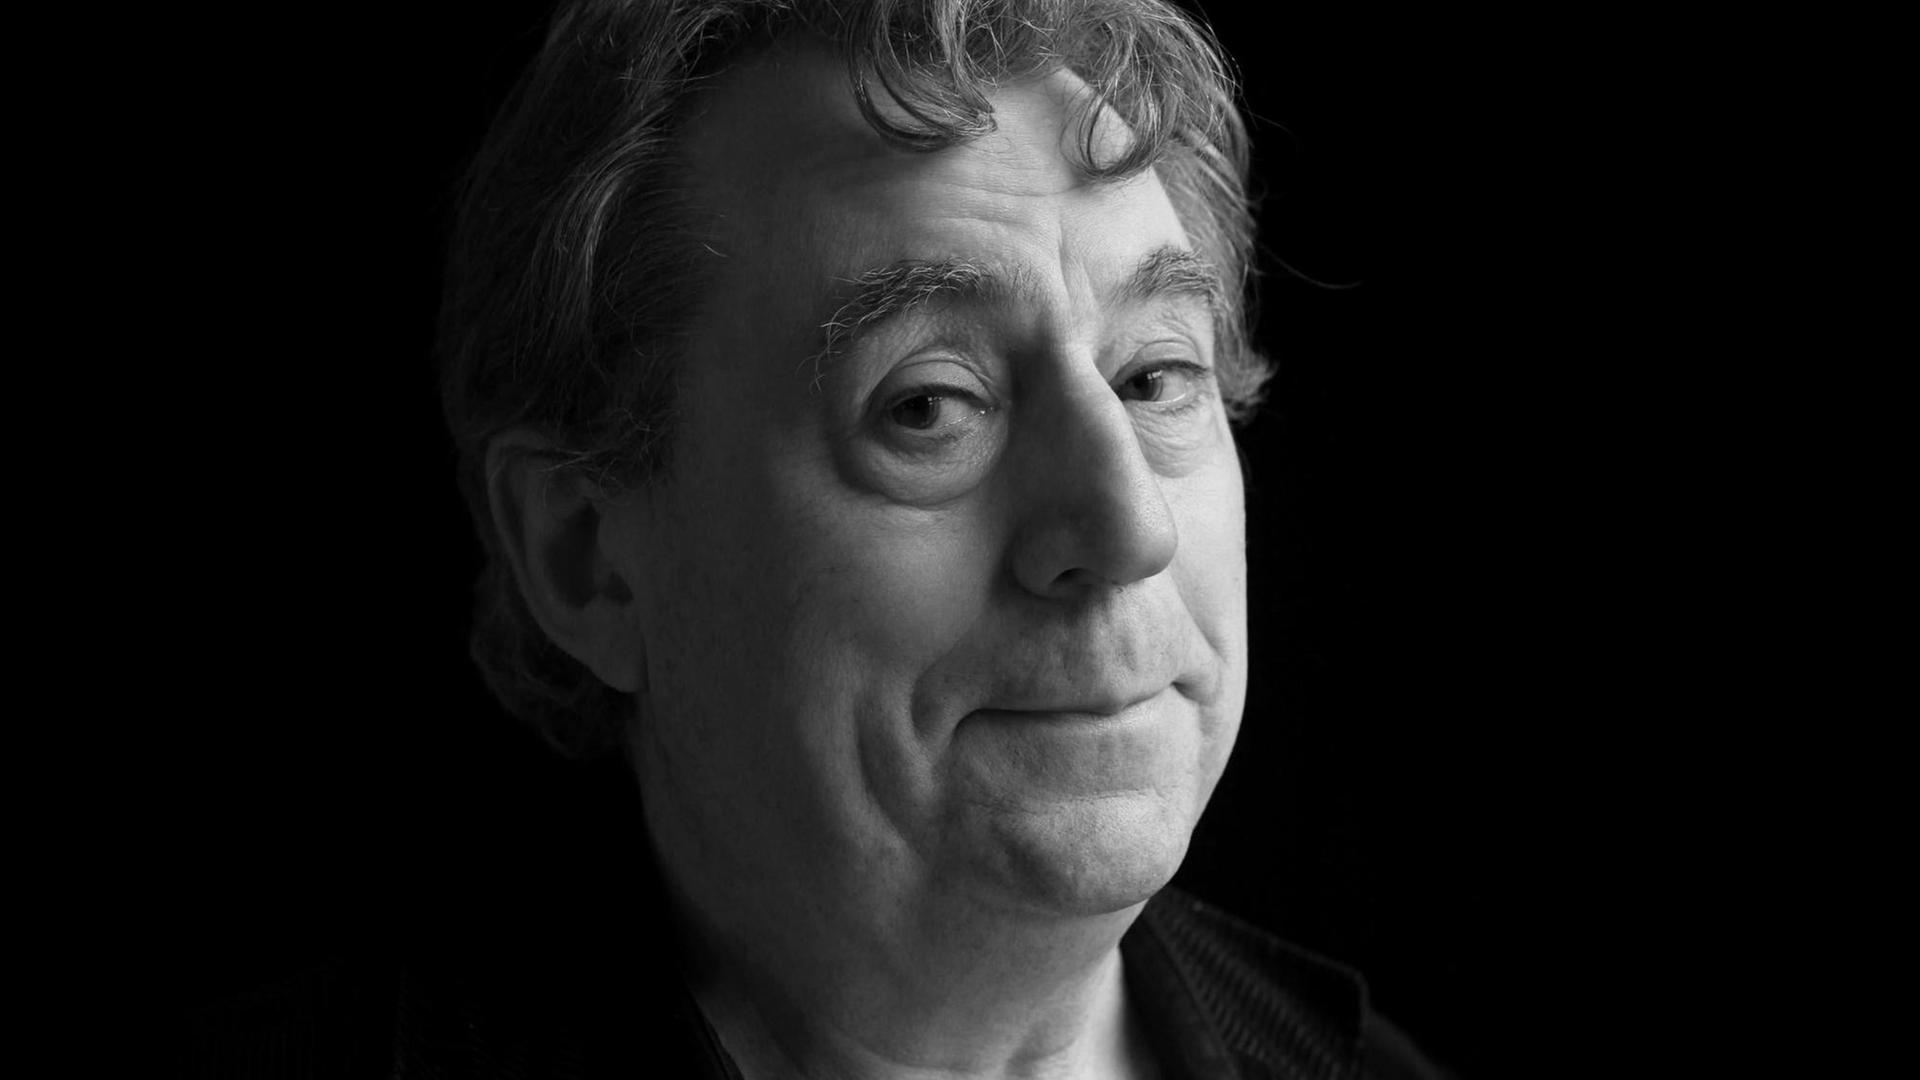 Terry Jones, englischer Schauspieler und Gründungsmitglied von Monty Python. Er führte Regie bei dem berühmten Film "Das Leben des Brian".